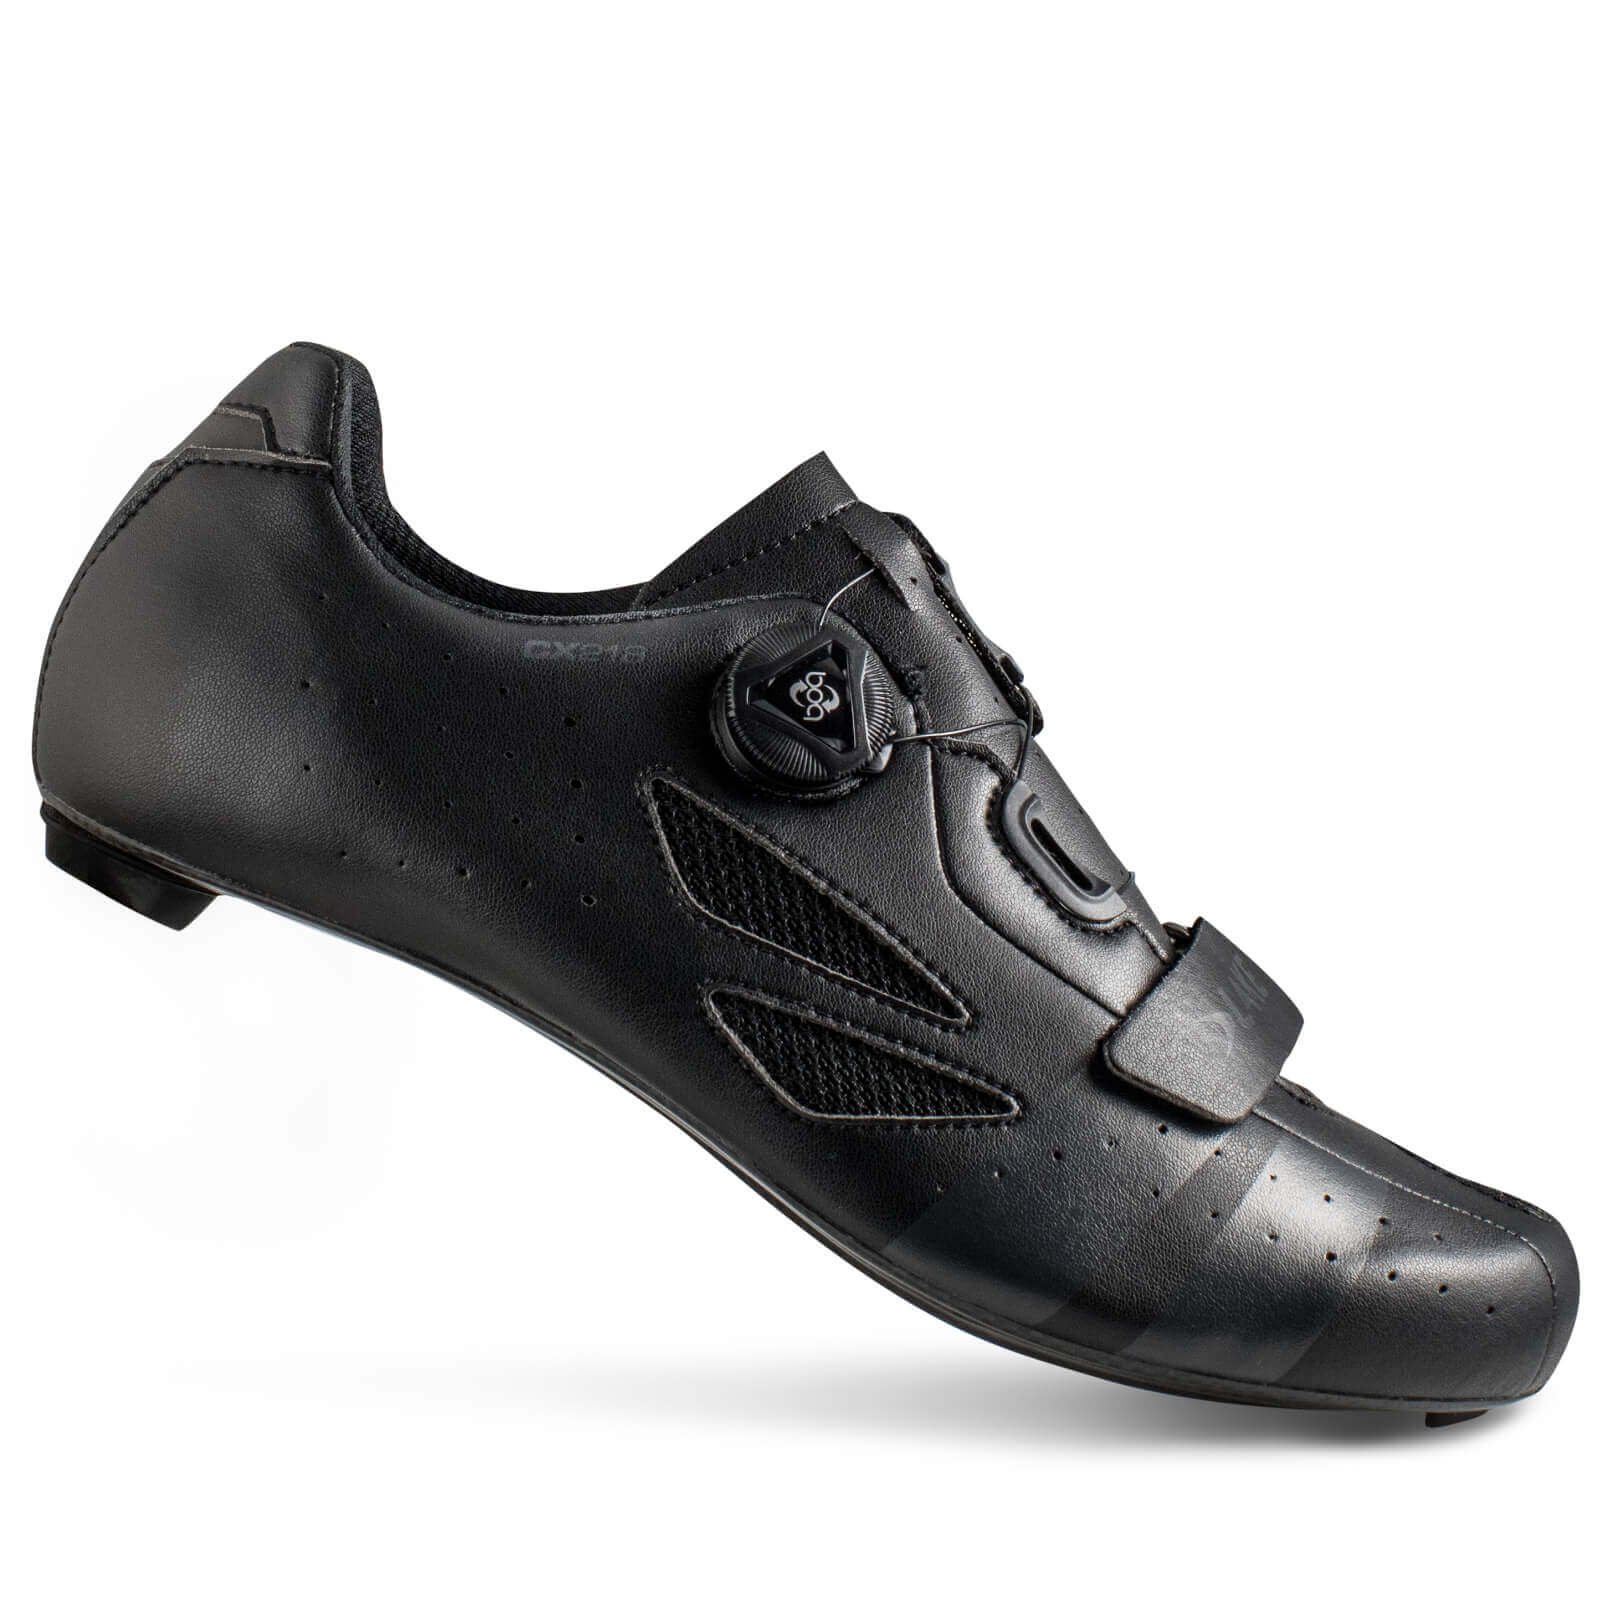 Lake CX218 Carbon Road Shoes - EU 43 - Black/Grey